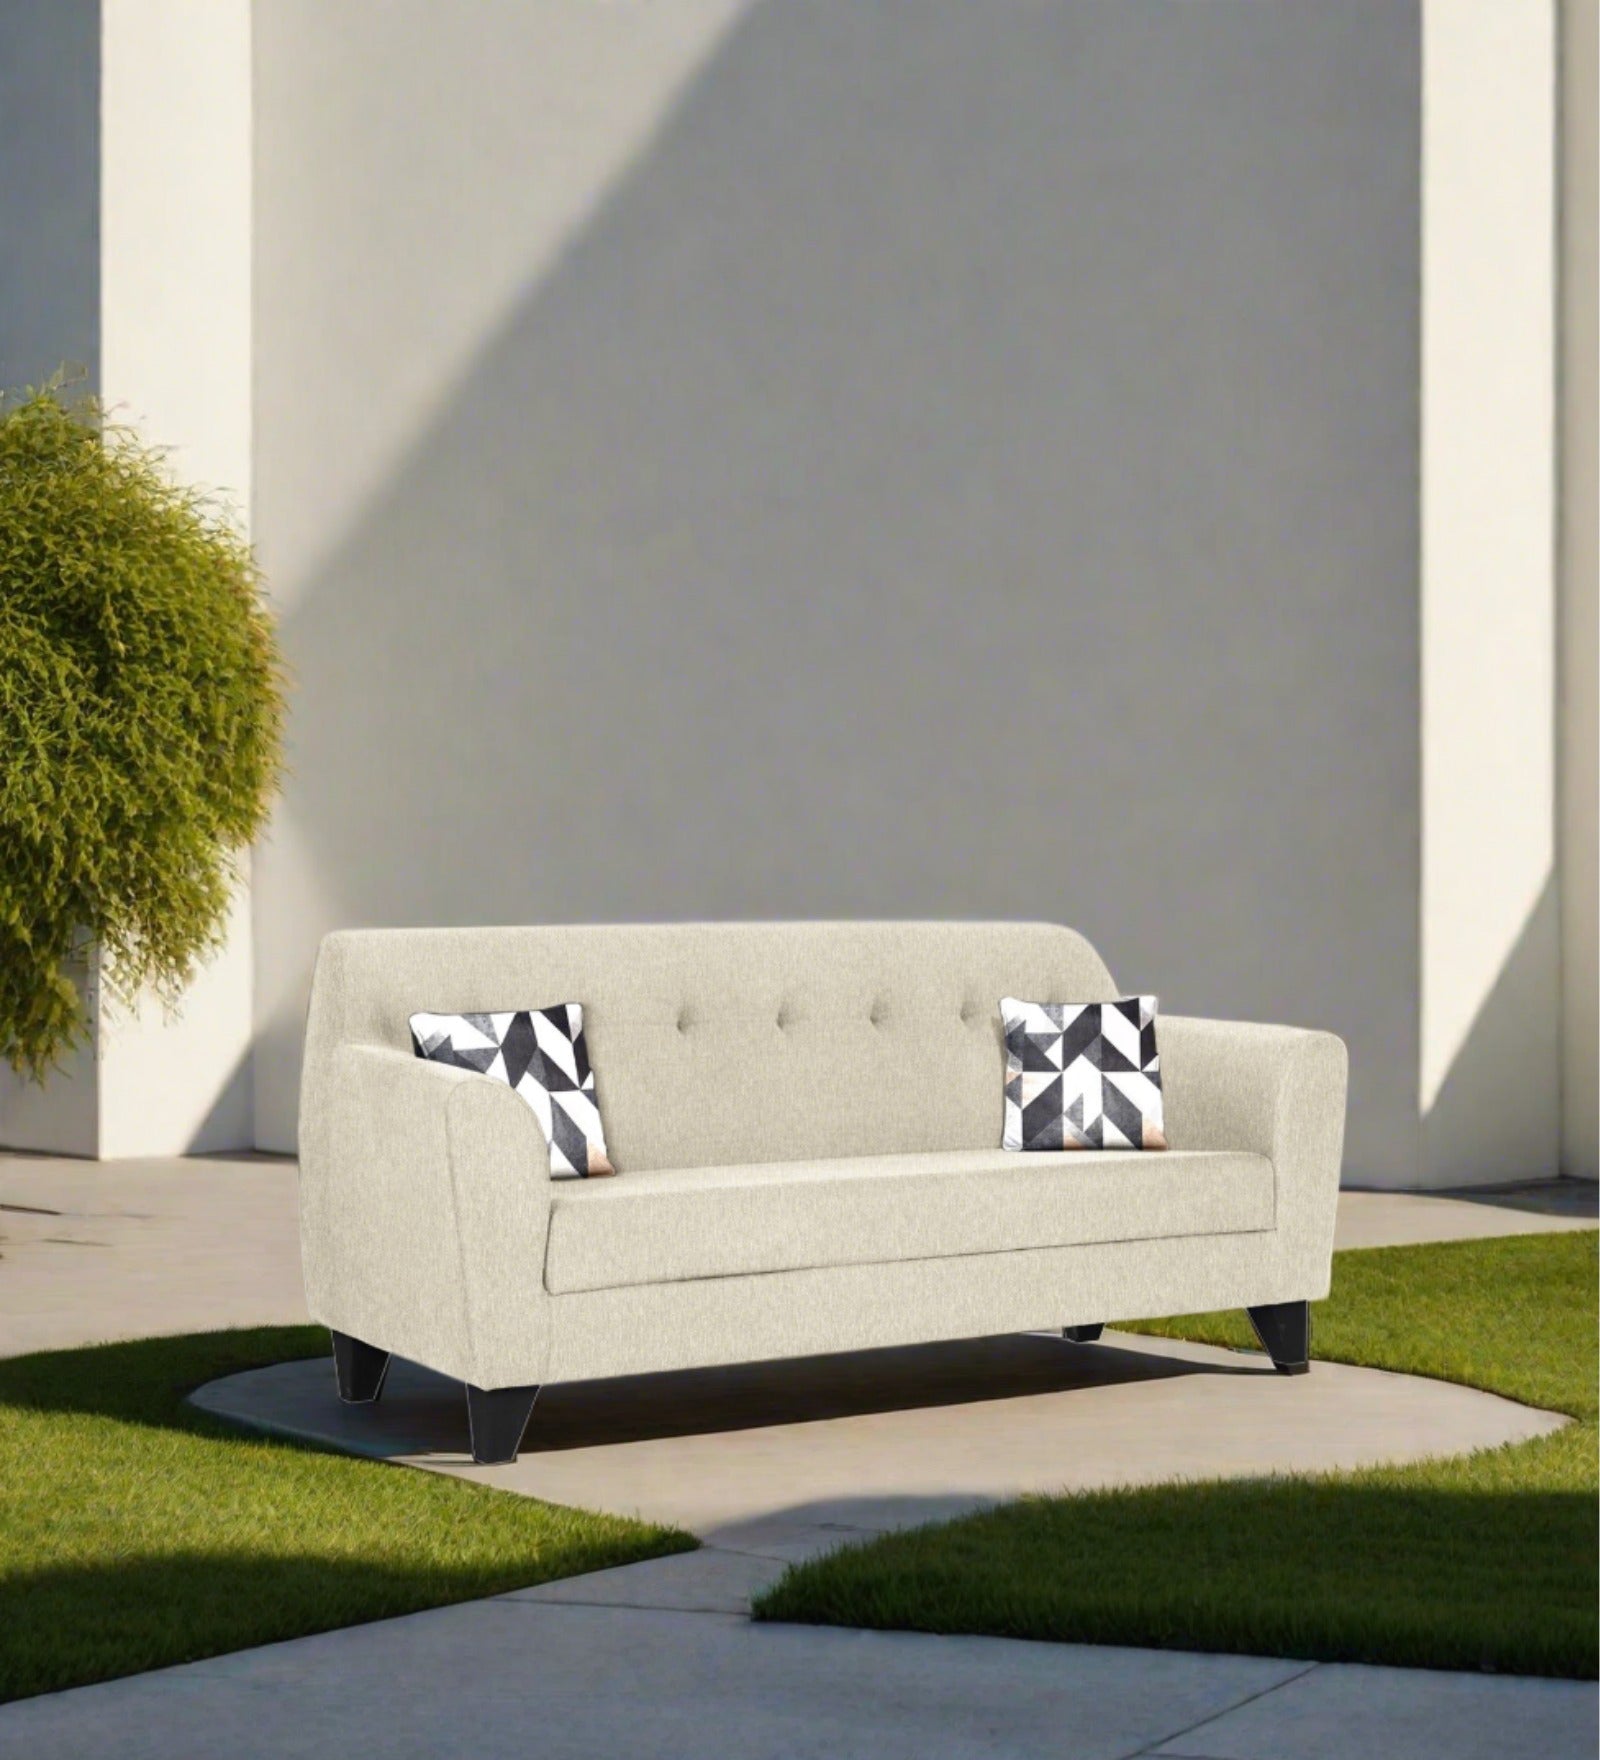 Melaan Fabric 3 Seater Sofa In Ivory cream Colour